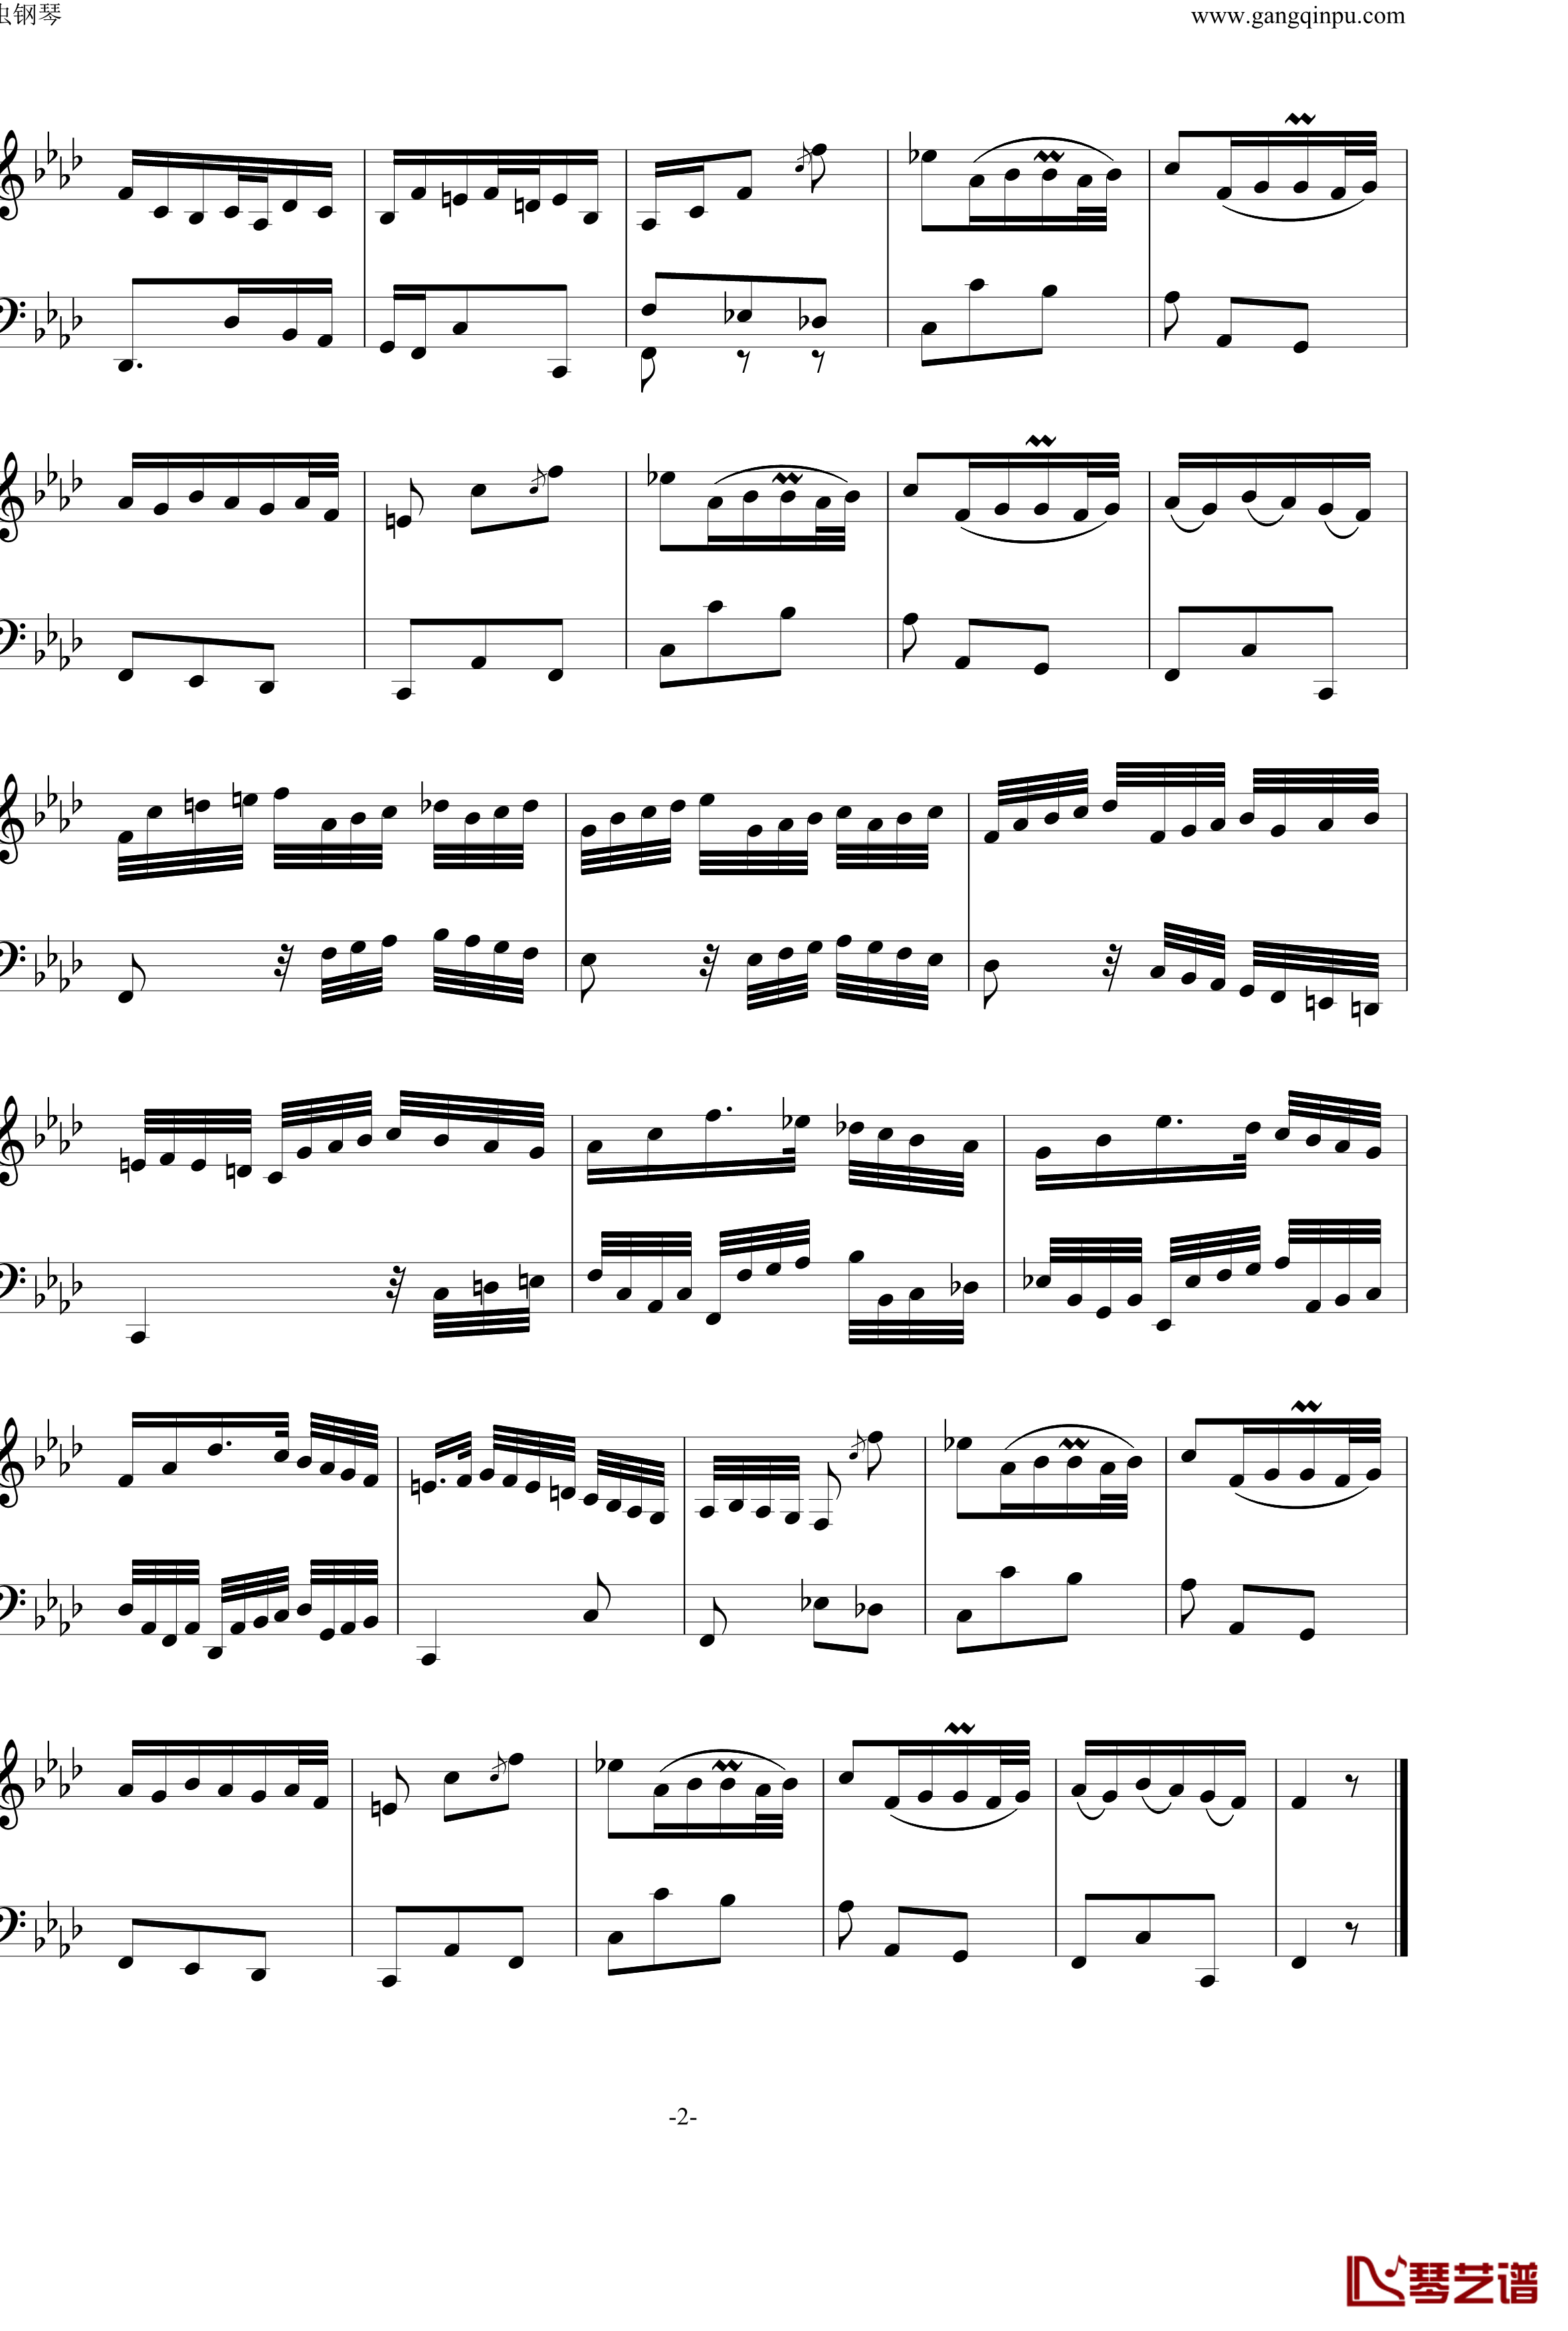 BWV823 No.1前奏曲钢琴谱-巴赫初级钢琴曲集最后一首-P.E.Bach2